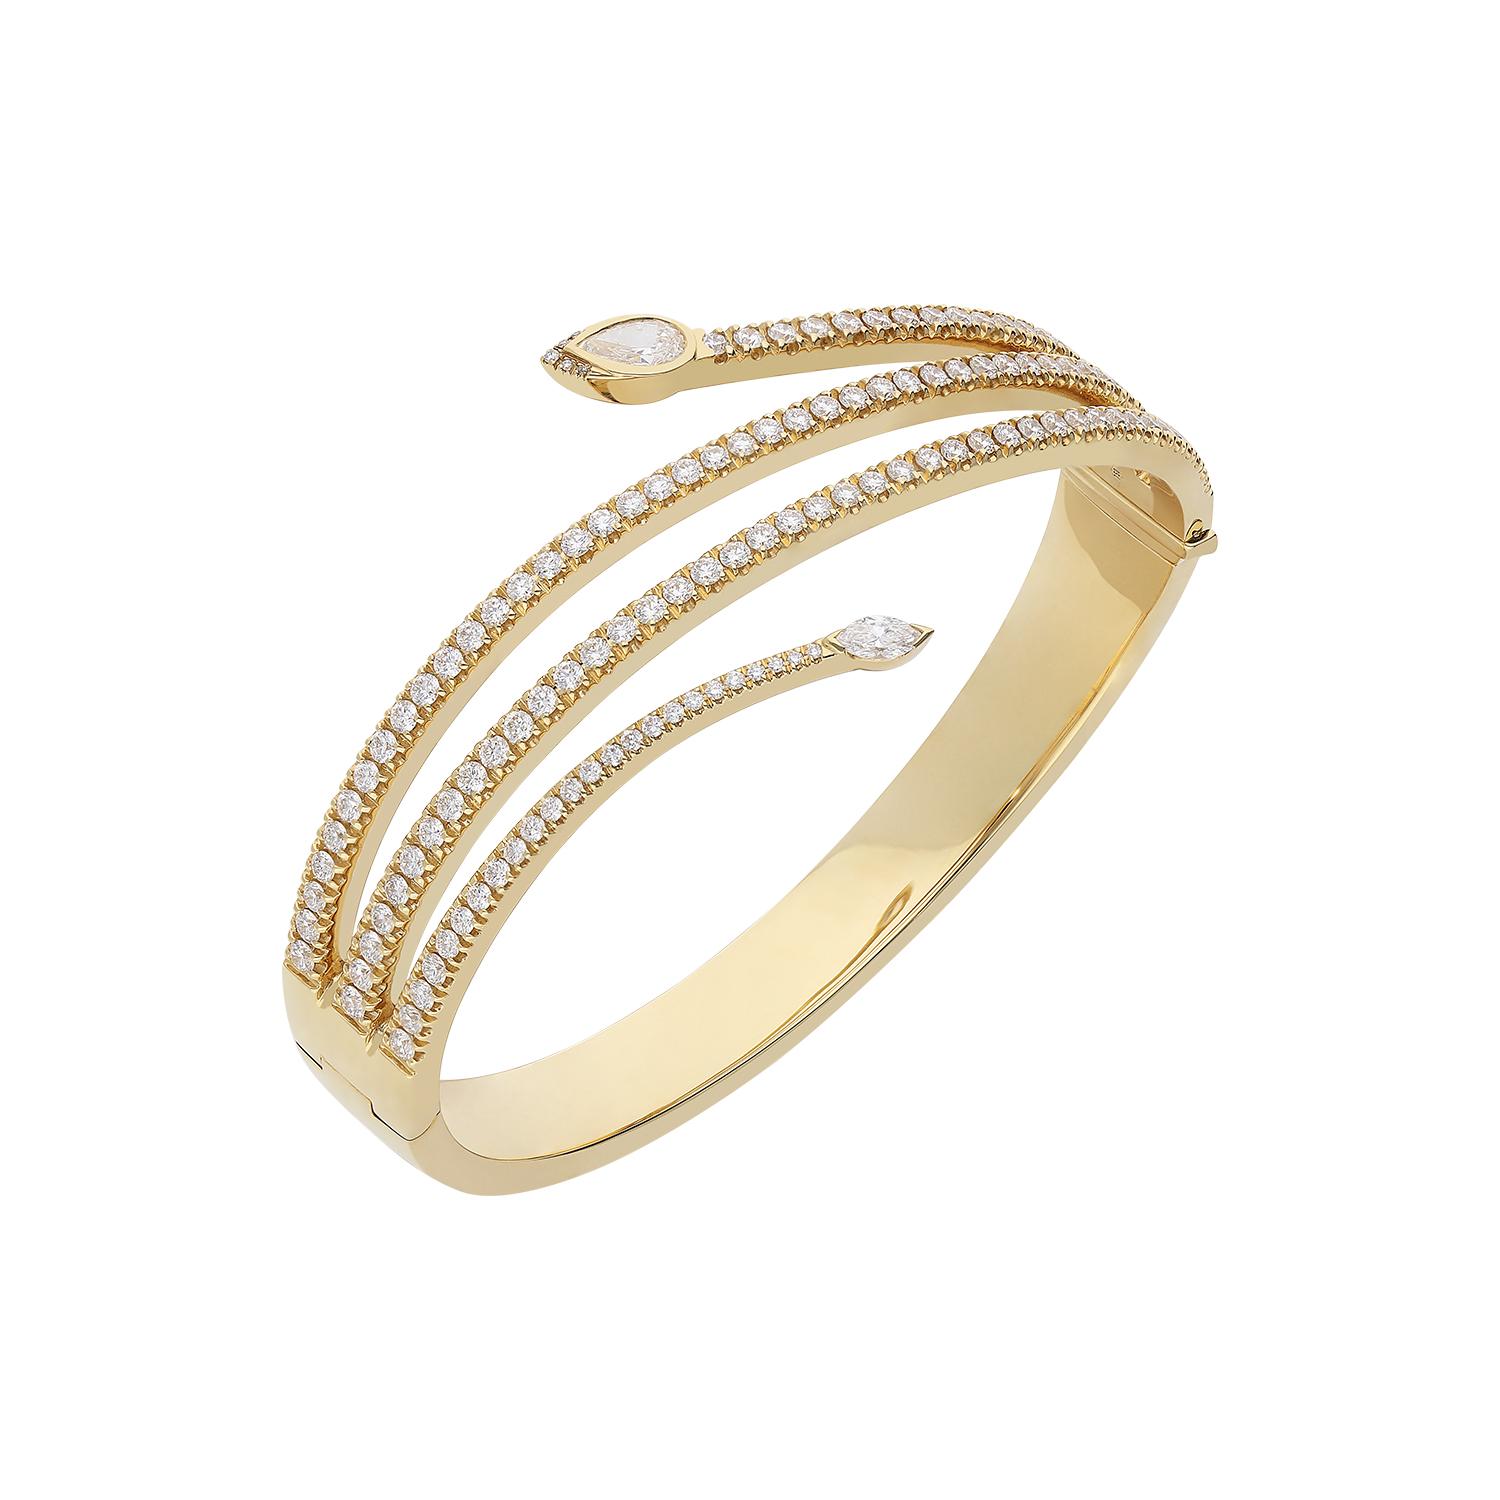 Un bracelet rigide en or jaune 18kt enveloppant avec des diamants blancs de taille brillant de couleur G SI pureté pour 3.06 carats, à la tête serti d'un diamant blanc de taille goutte GSI pour 0.41 carats et à la queue avec un caporal serti d'un